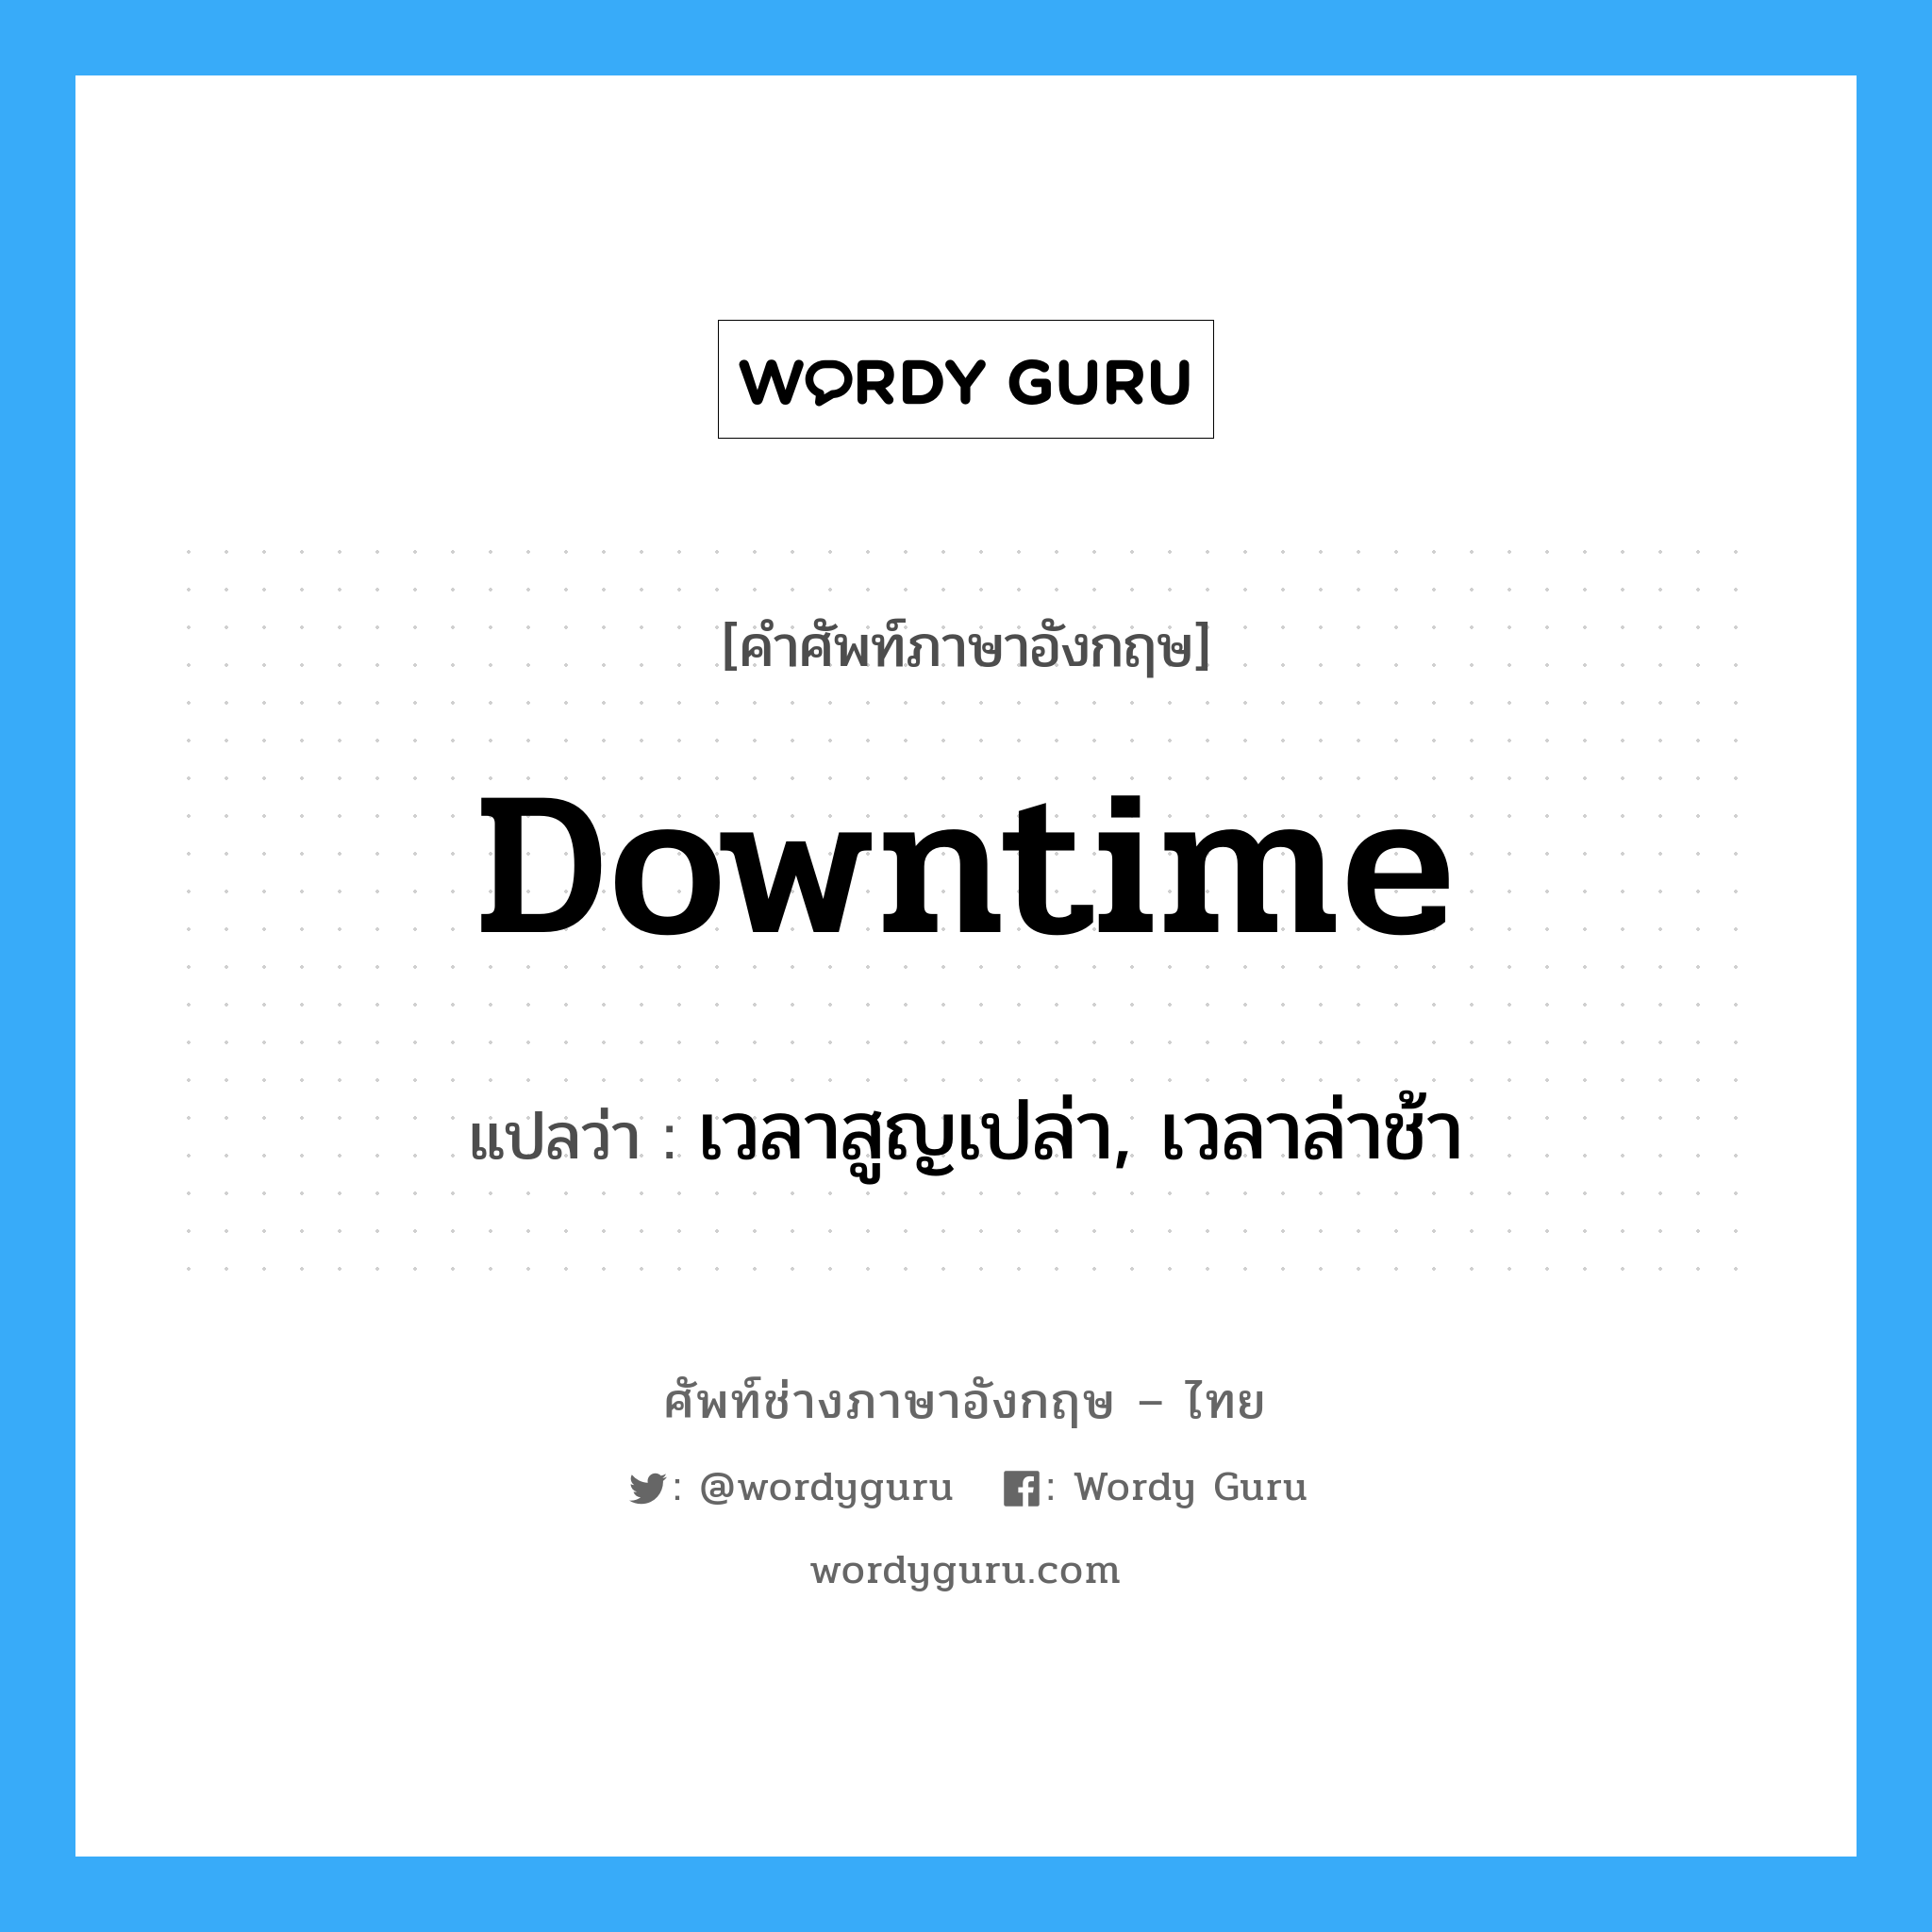 Downtime แปลว่า?, คำศัพท์ช่างภาษาอังกฤษ - ไทย Downtime คำศัพท์ภาษาอังกฤษ Downtime แปลว่า เวลาสูญเปล่า, เวลาล่าช้า